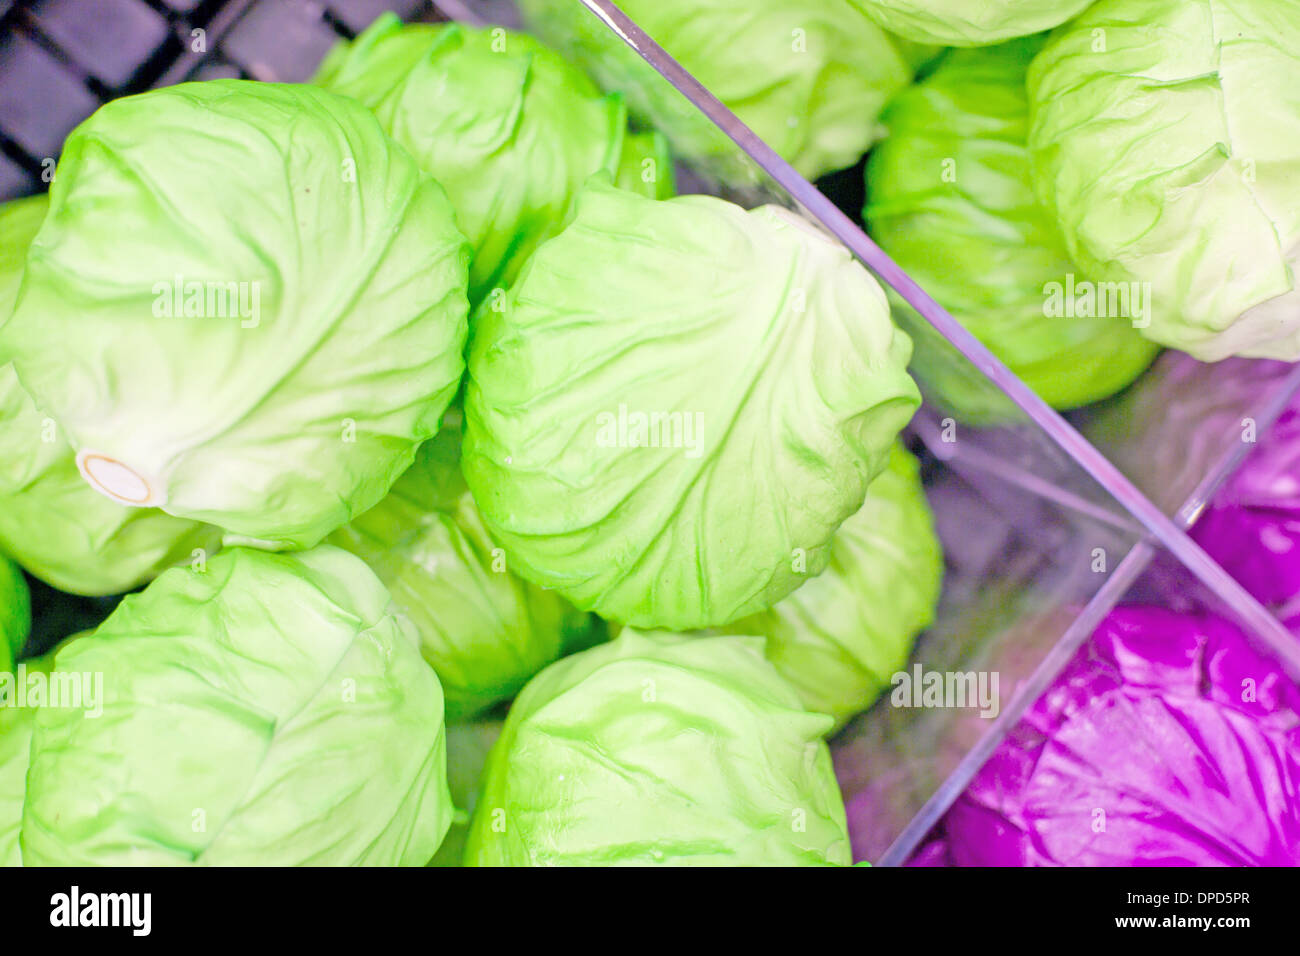 Fresh vegetables on the shelves Stock Photo